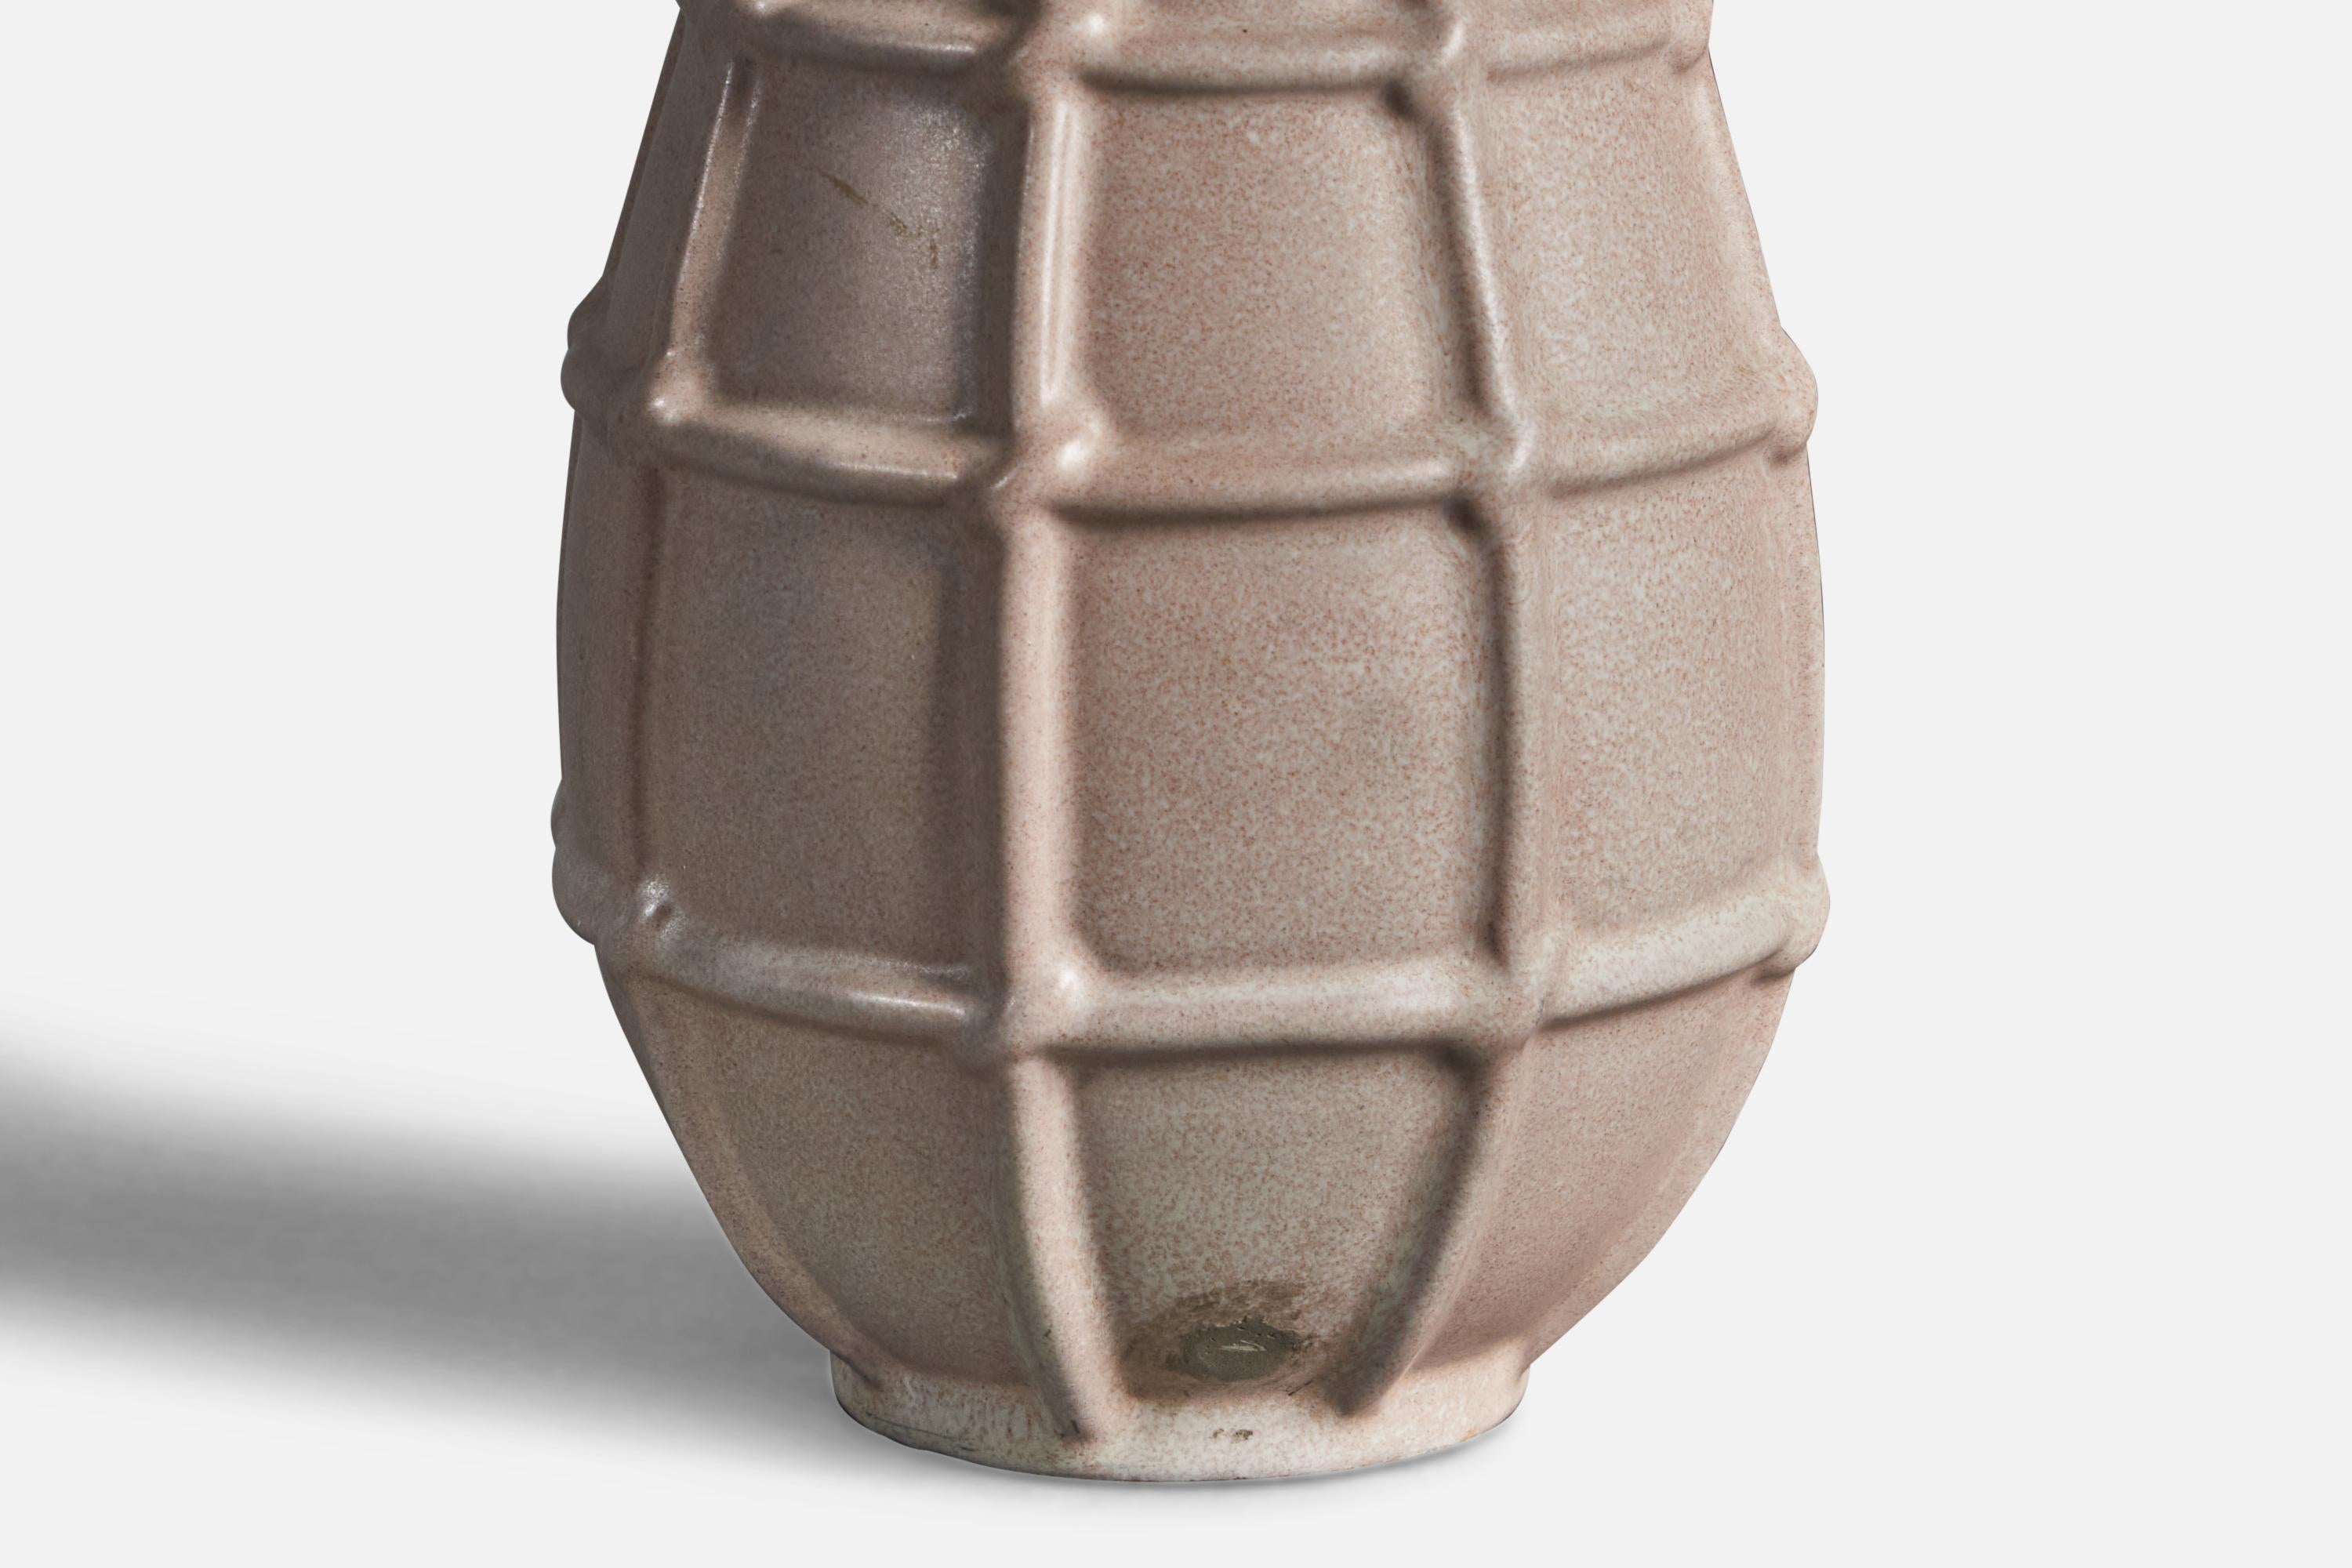 A beige-glazed earthenware vase designed and produced by Upsala Ekeby, Sweden, 1930s.

